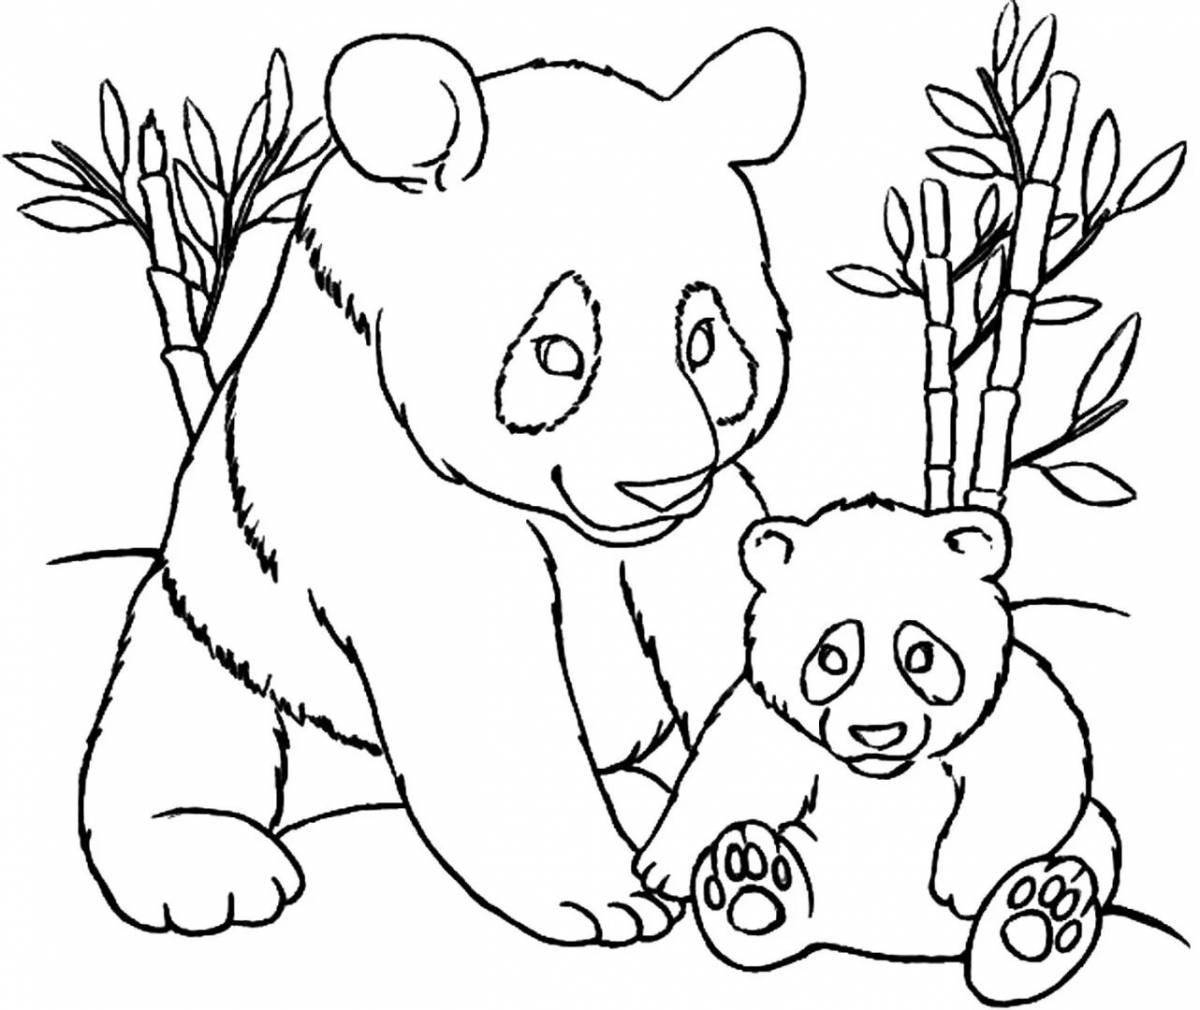 Анимированная страница раскраски маленькой панды